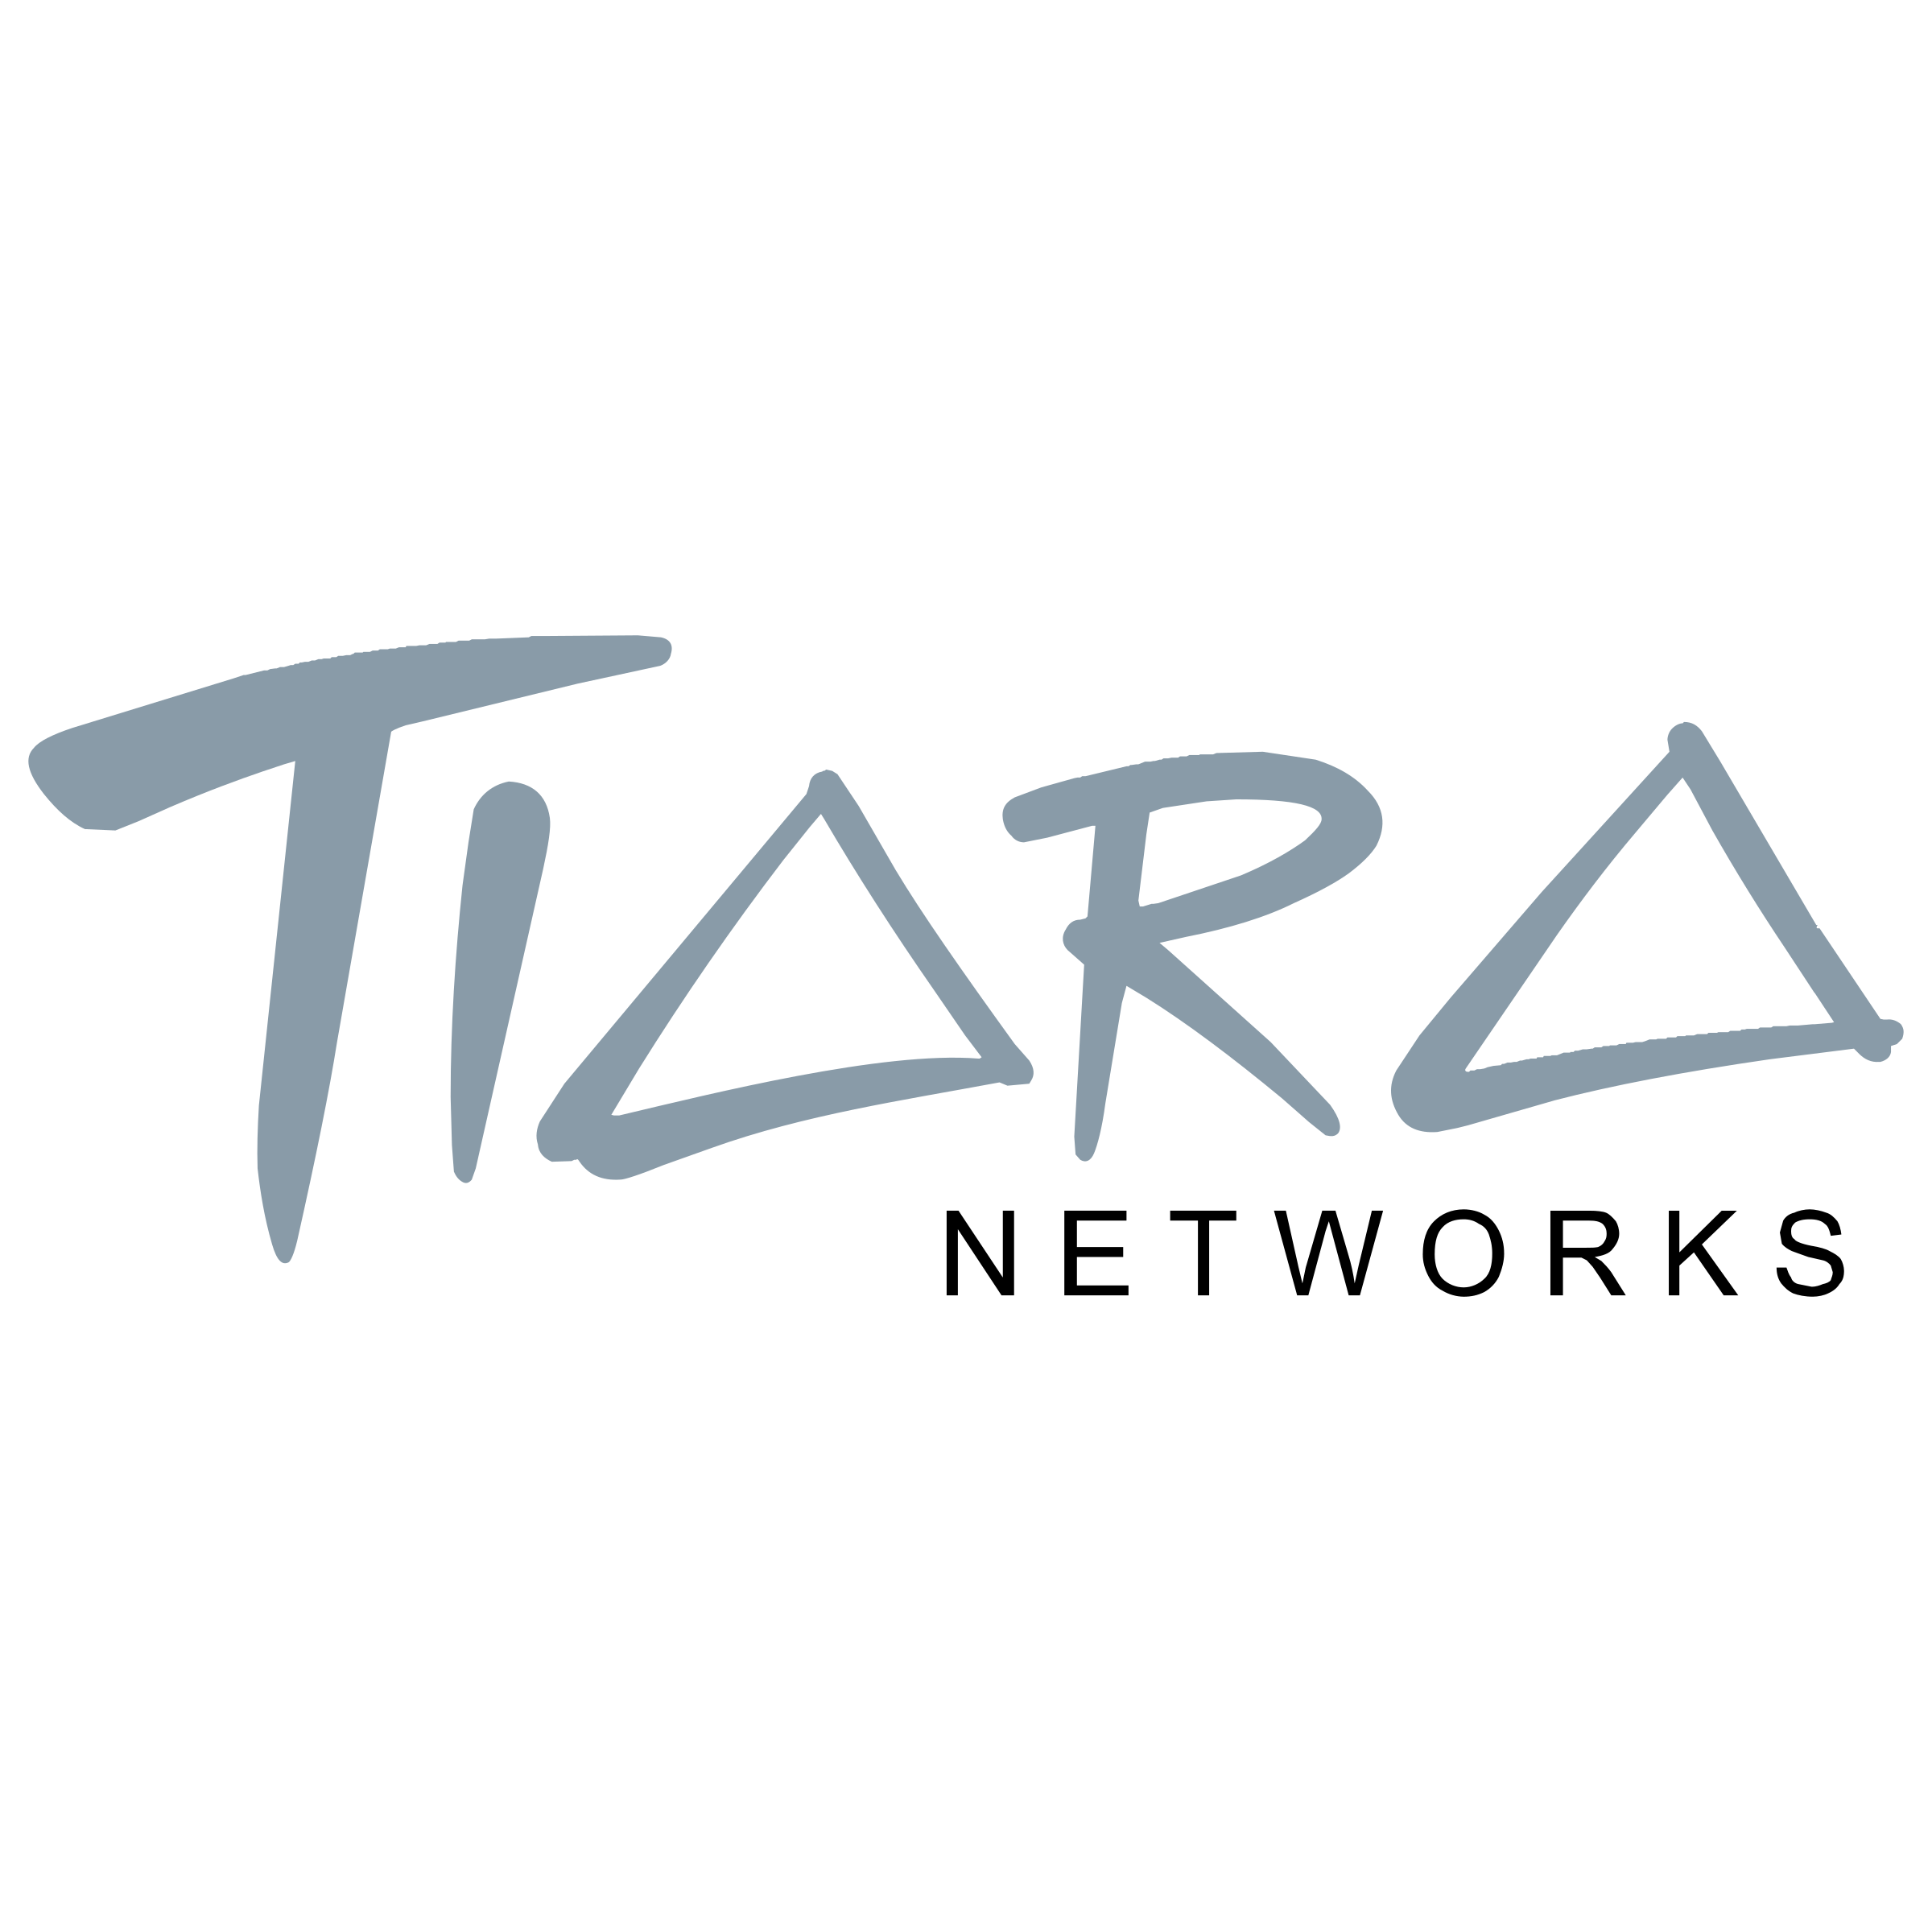 Tiara Logo - Tiara Logo PNG Transparent & SVG Vector